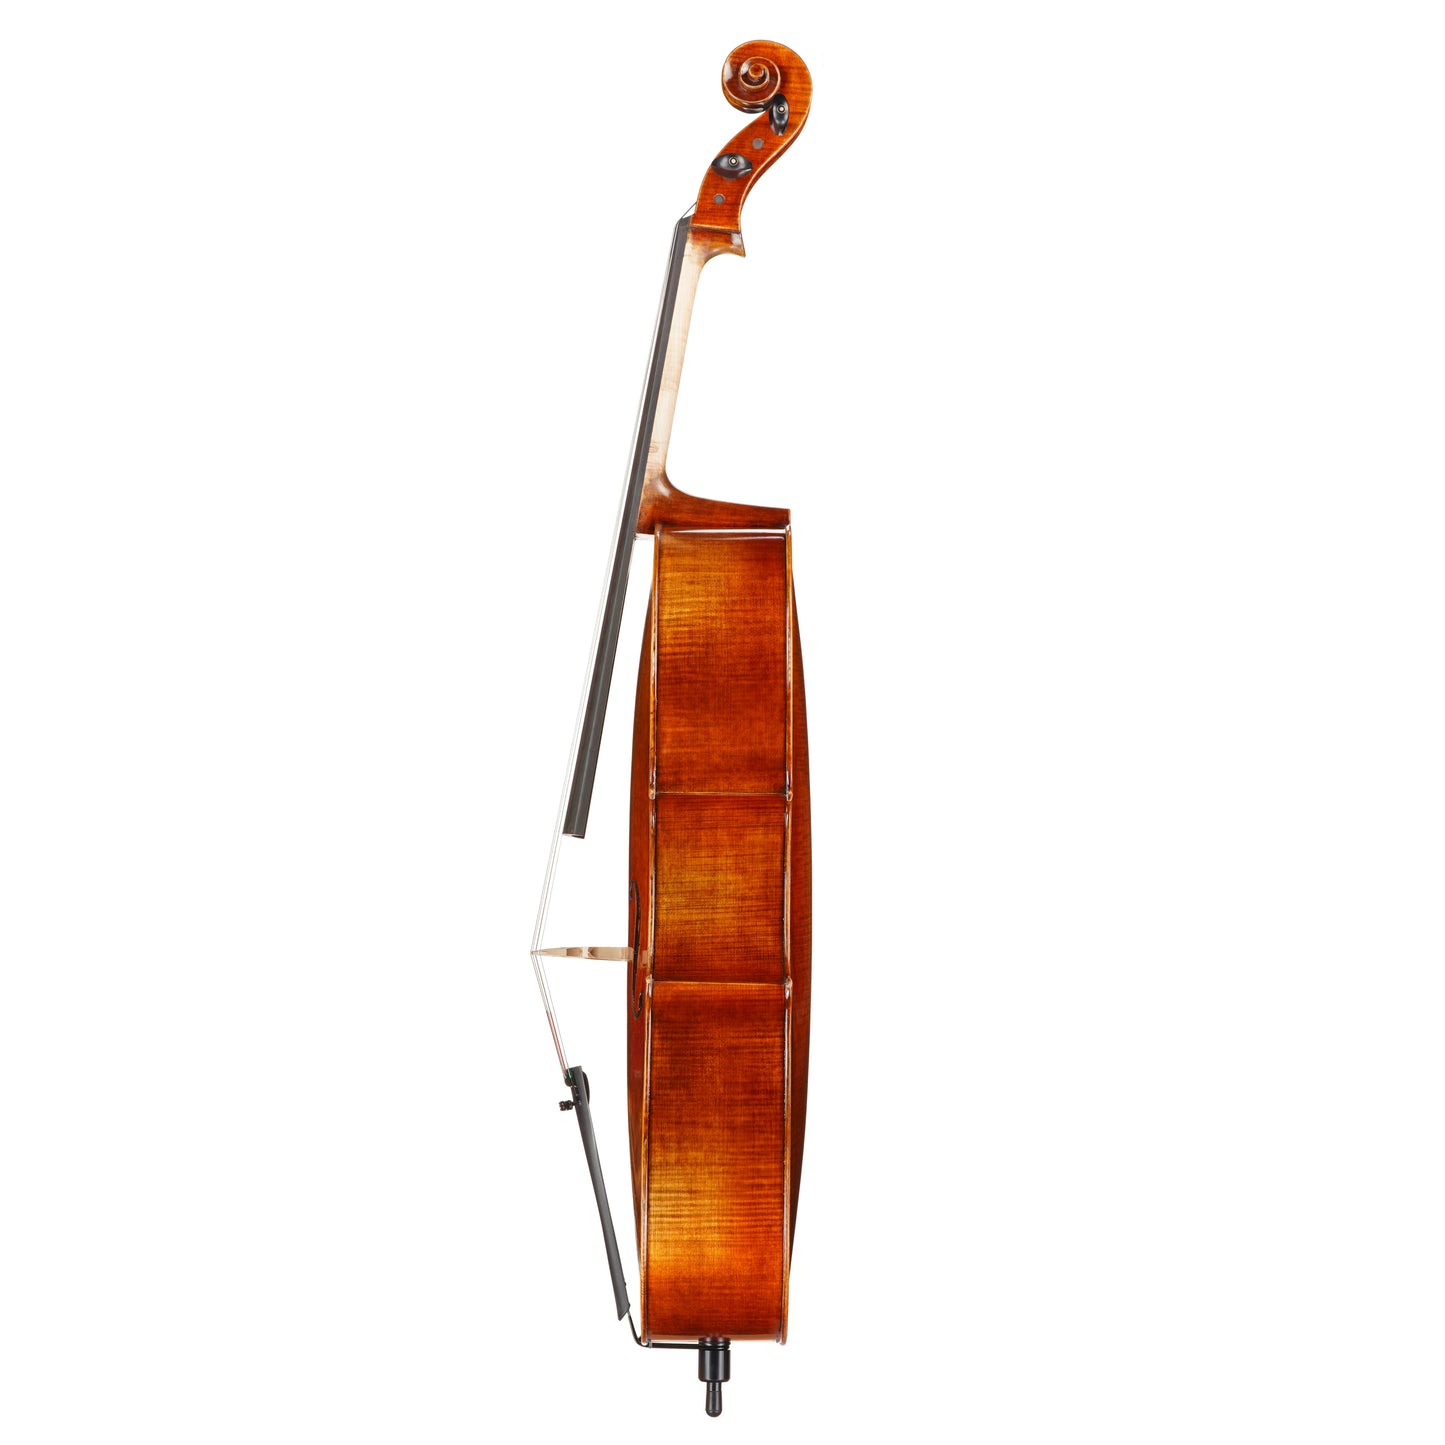 Vincenzo Bellini VB-305 Cello